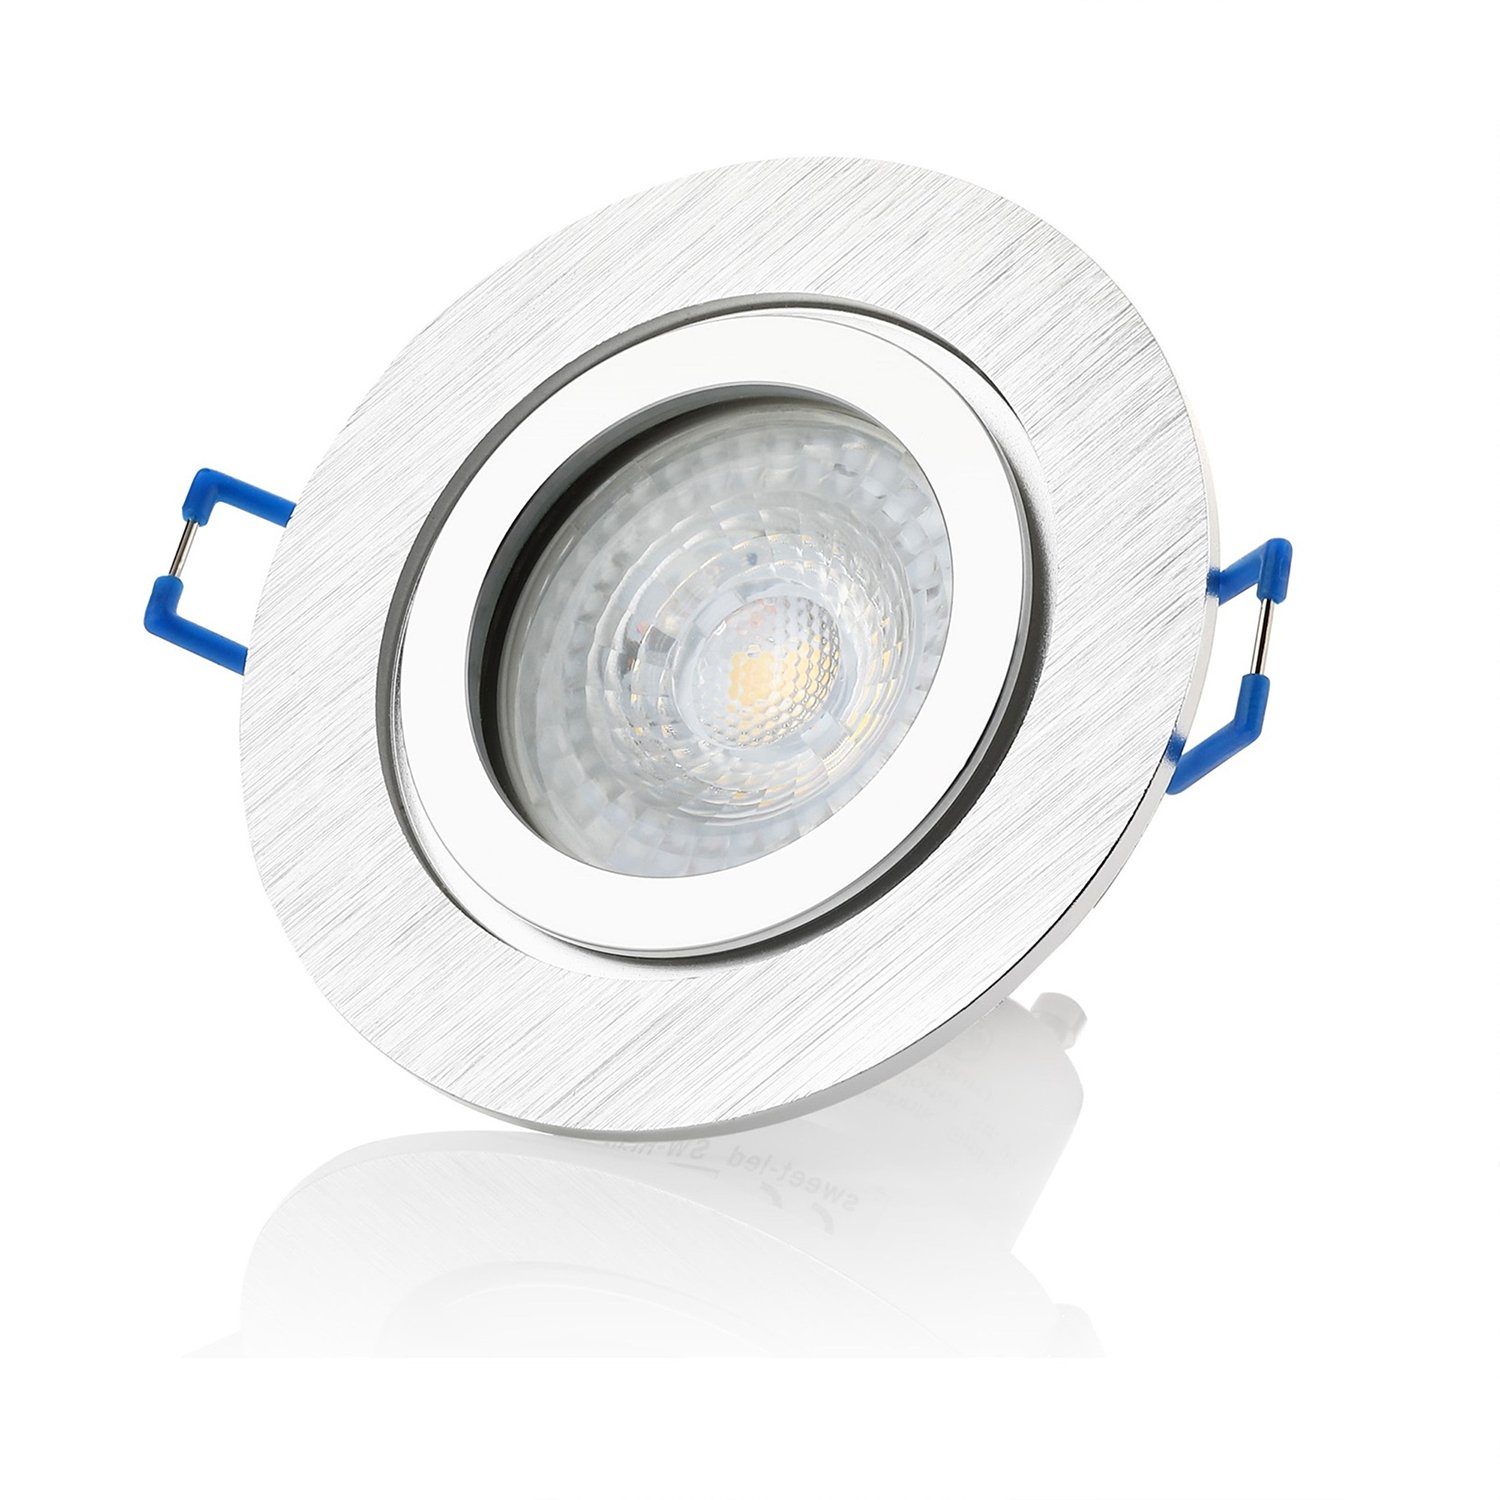 Sweet LED LED Einbaustrahler spots Deckenstrahler,Einbauleuchten IP44 badezimmer - warmweiß, Aluminium Bad GU10 3000K wechselbar, Leuchtmittel stück, 6 Deckenspots, 7W